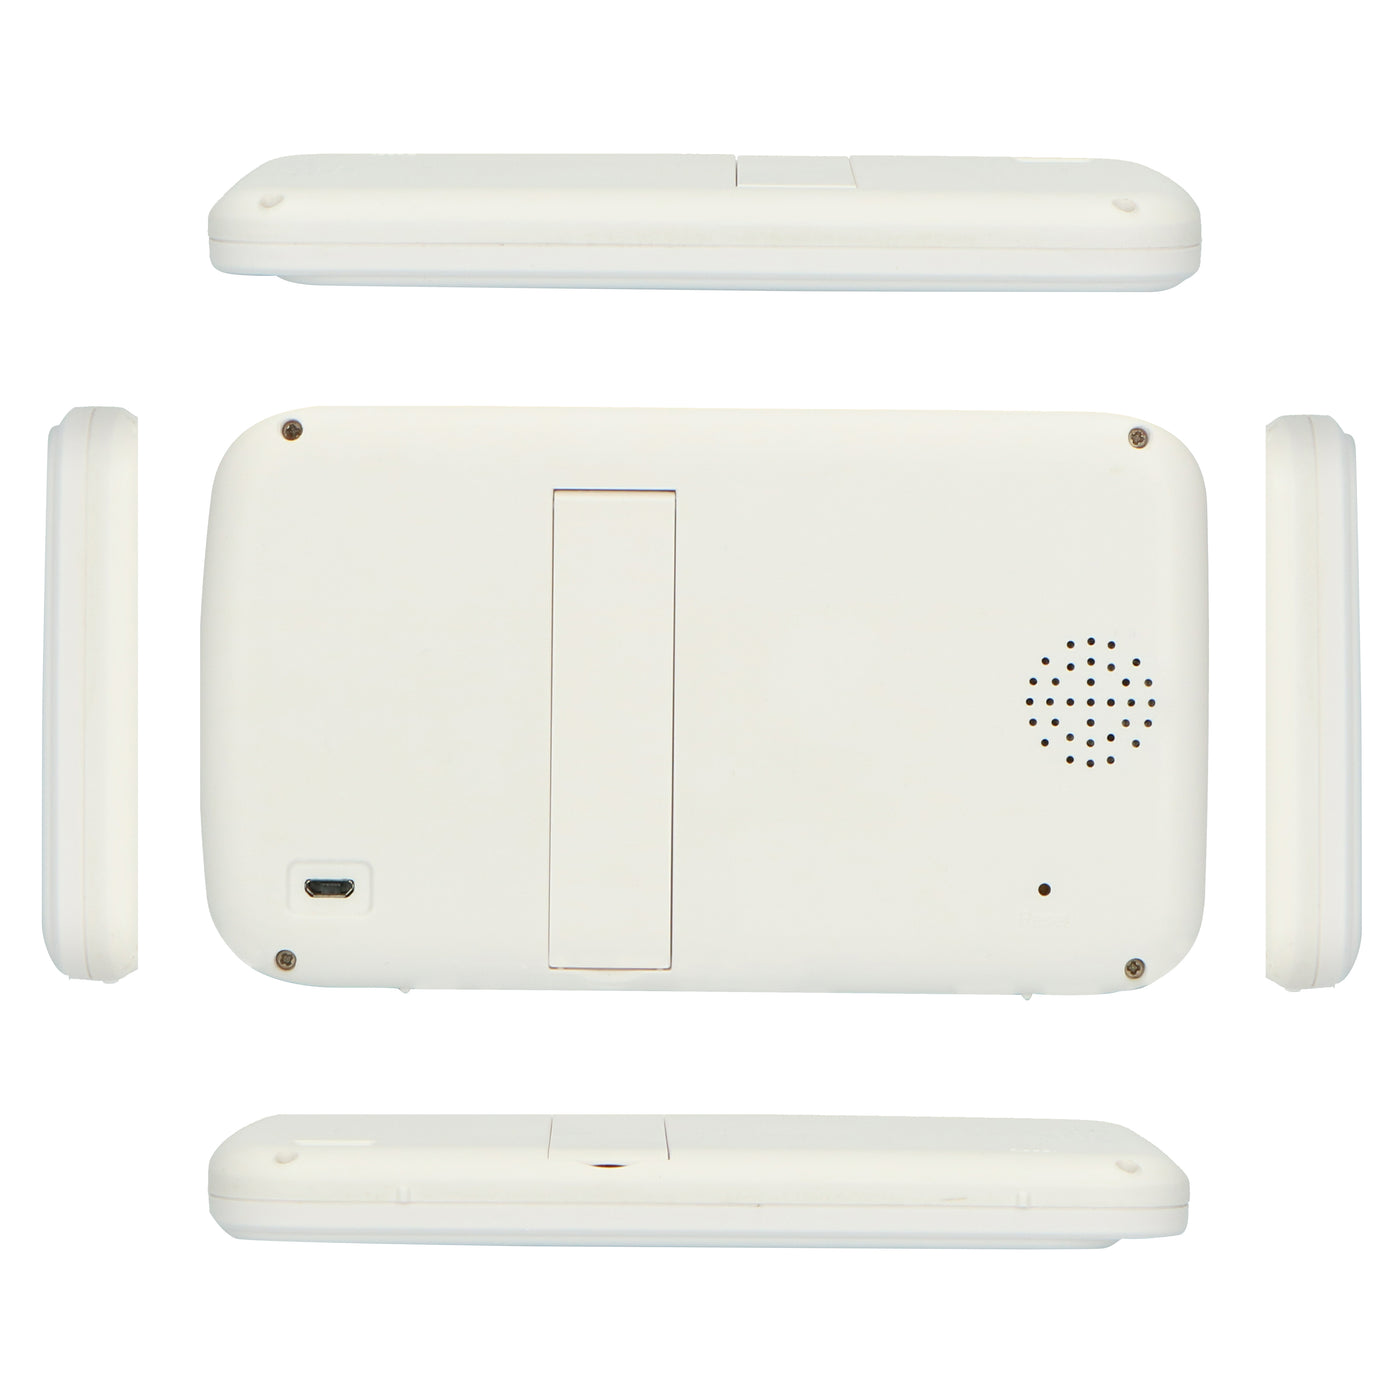 Alecto DVM-275 - Babyphone avec caméra et écran couleur 5", blanc